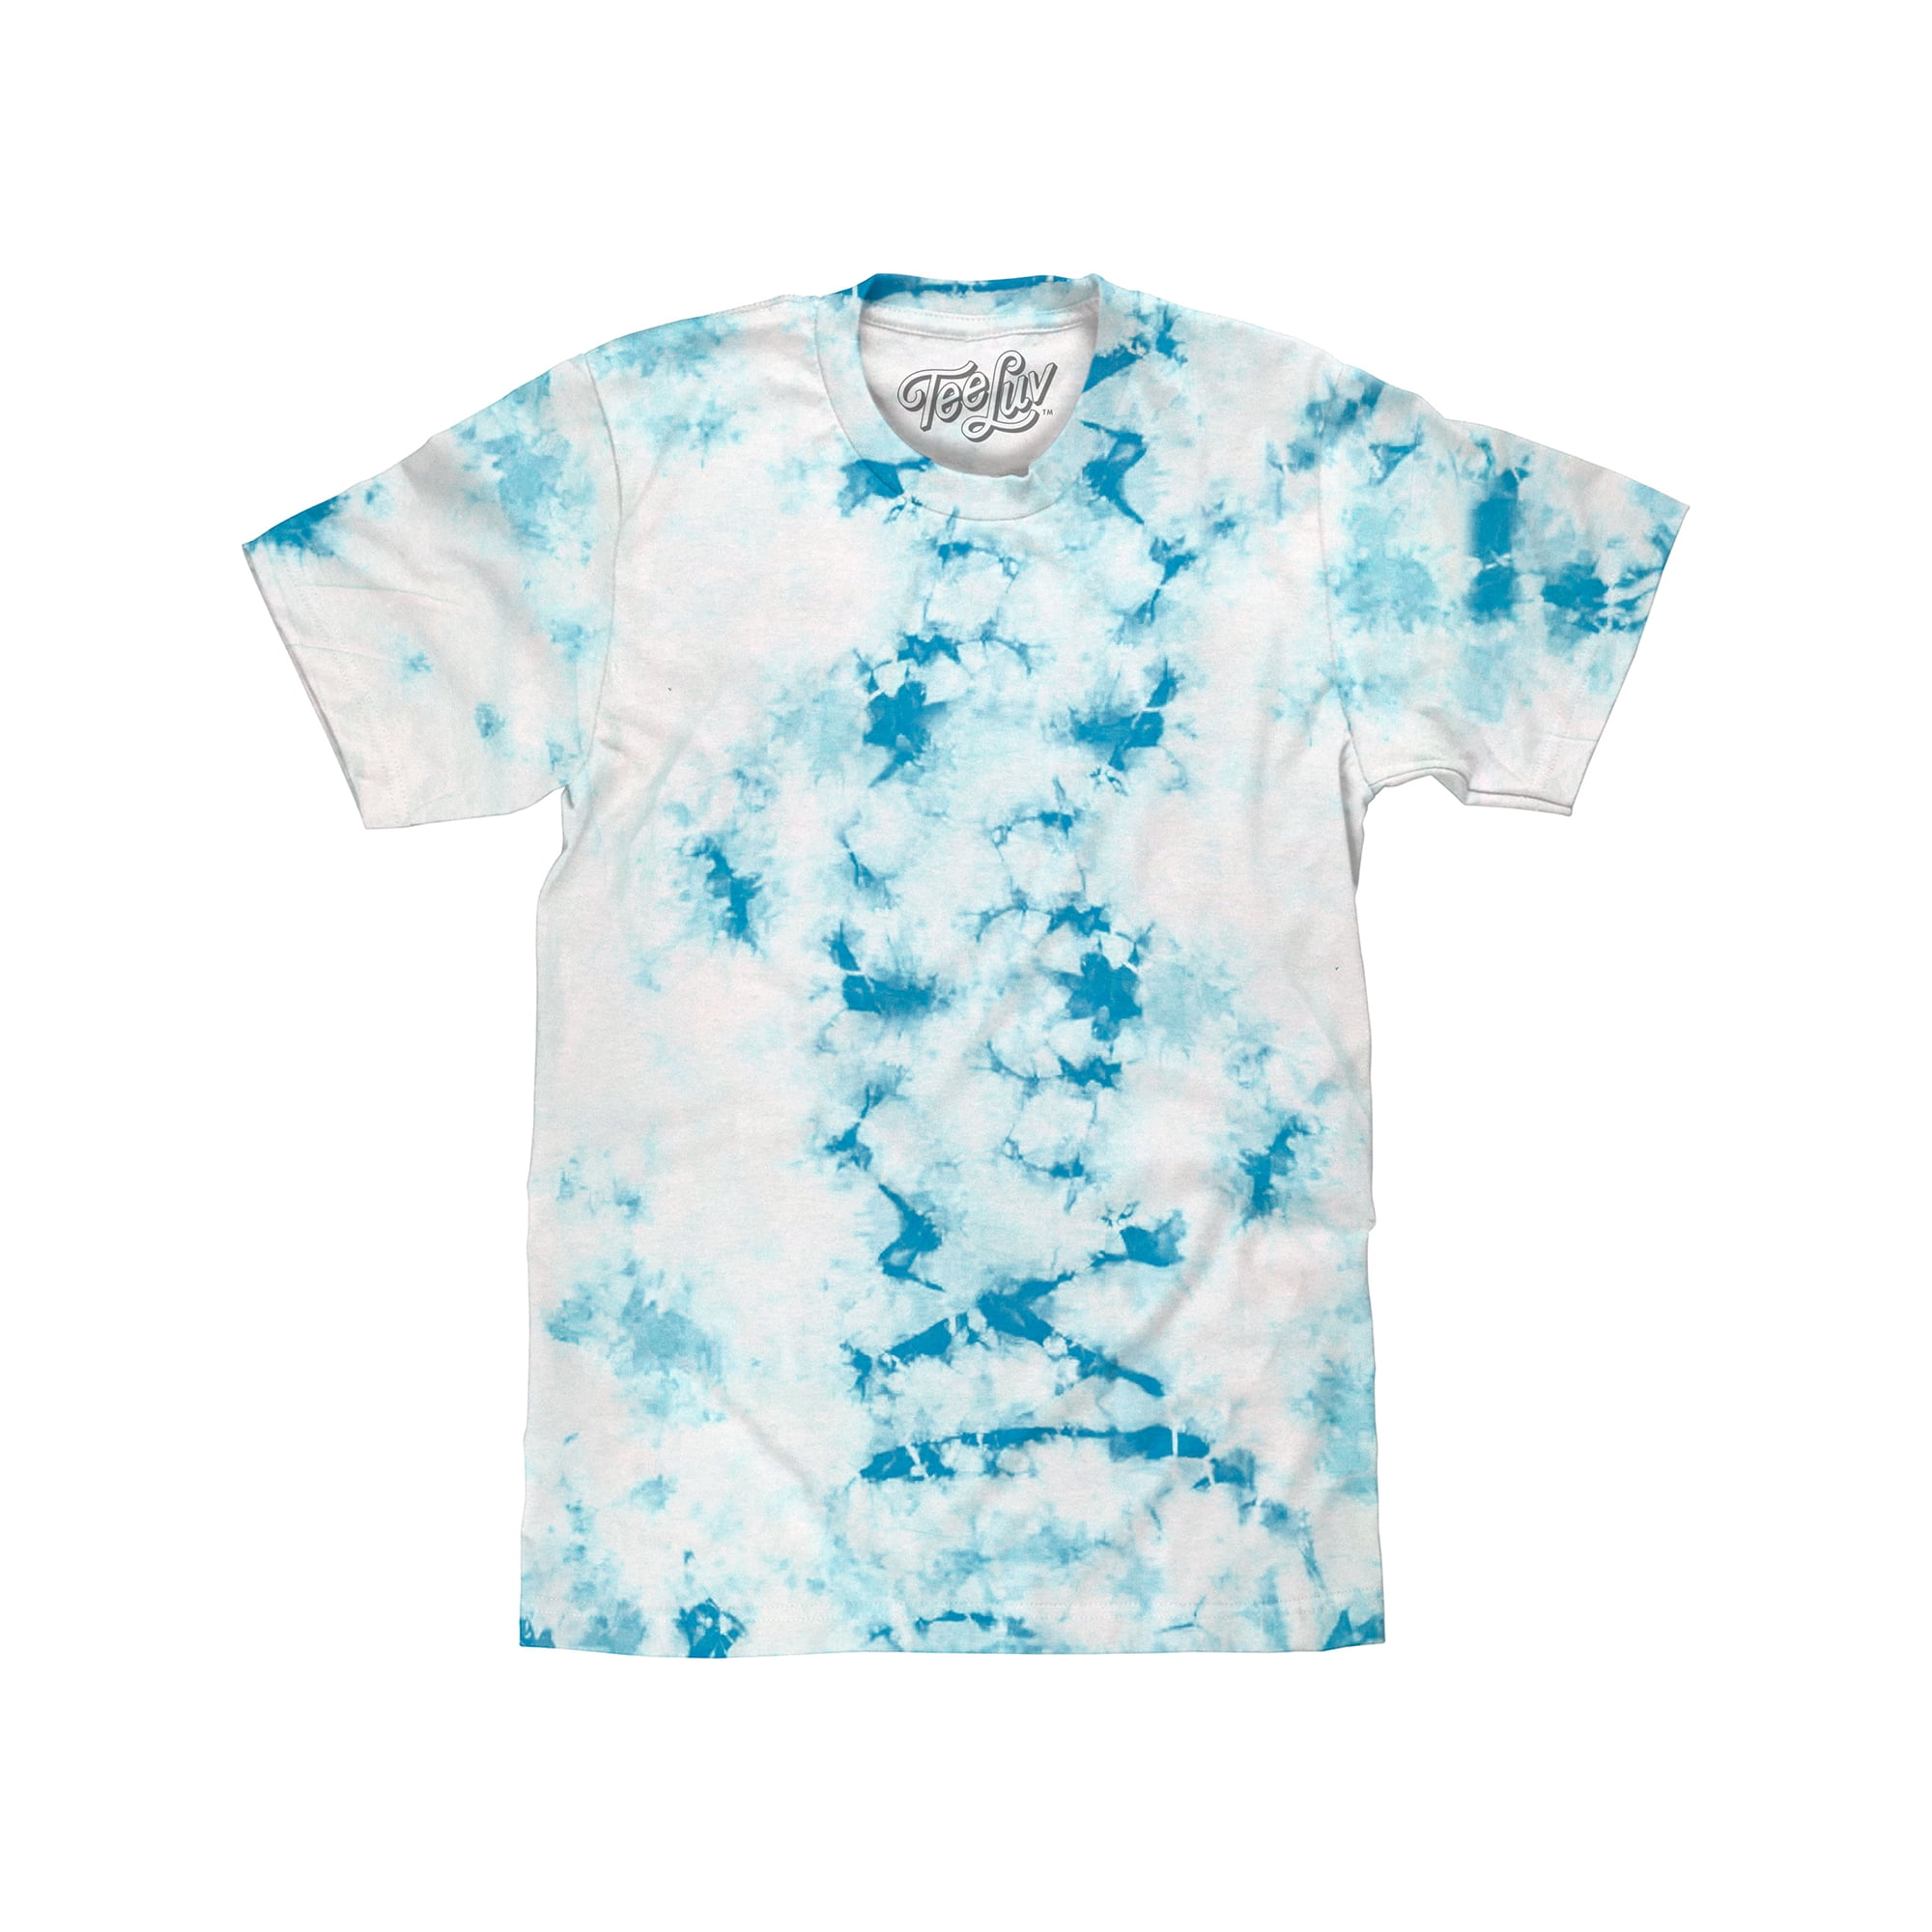 Tee Luv Men's Cloud Wash Tie Dye T-Shirt